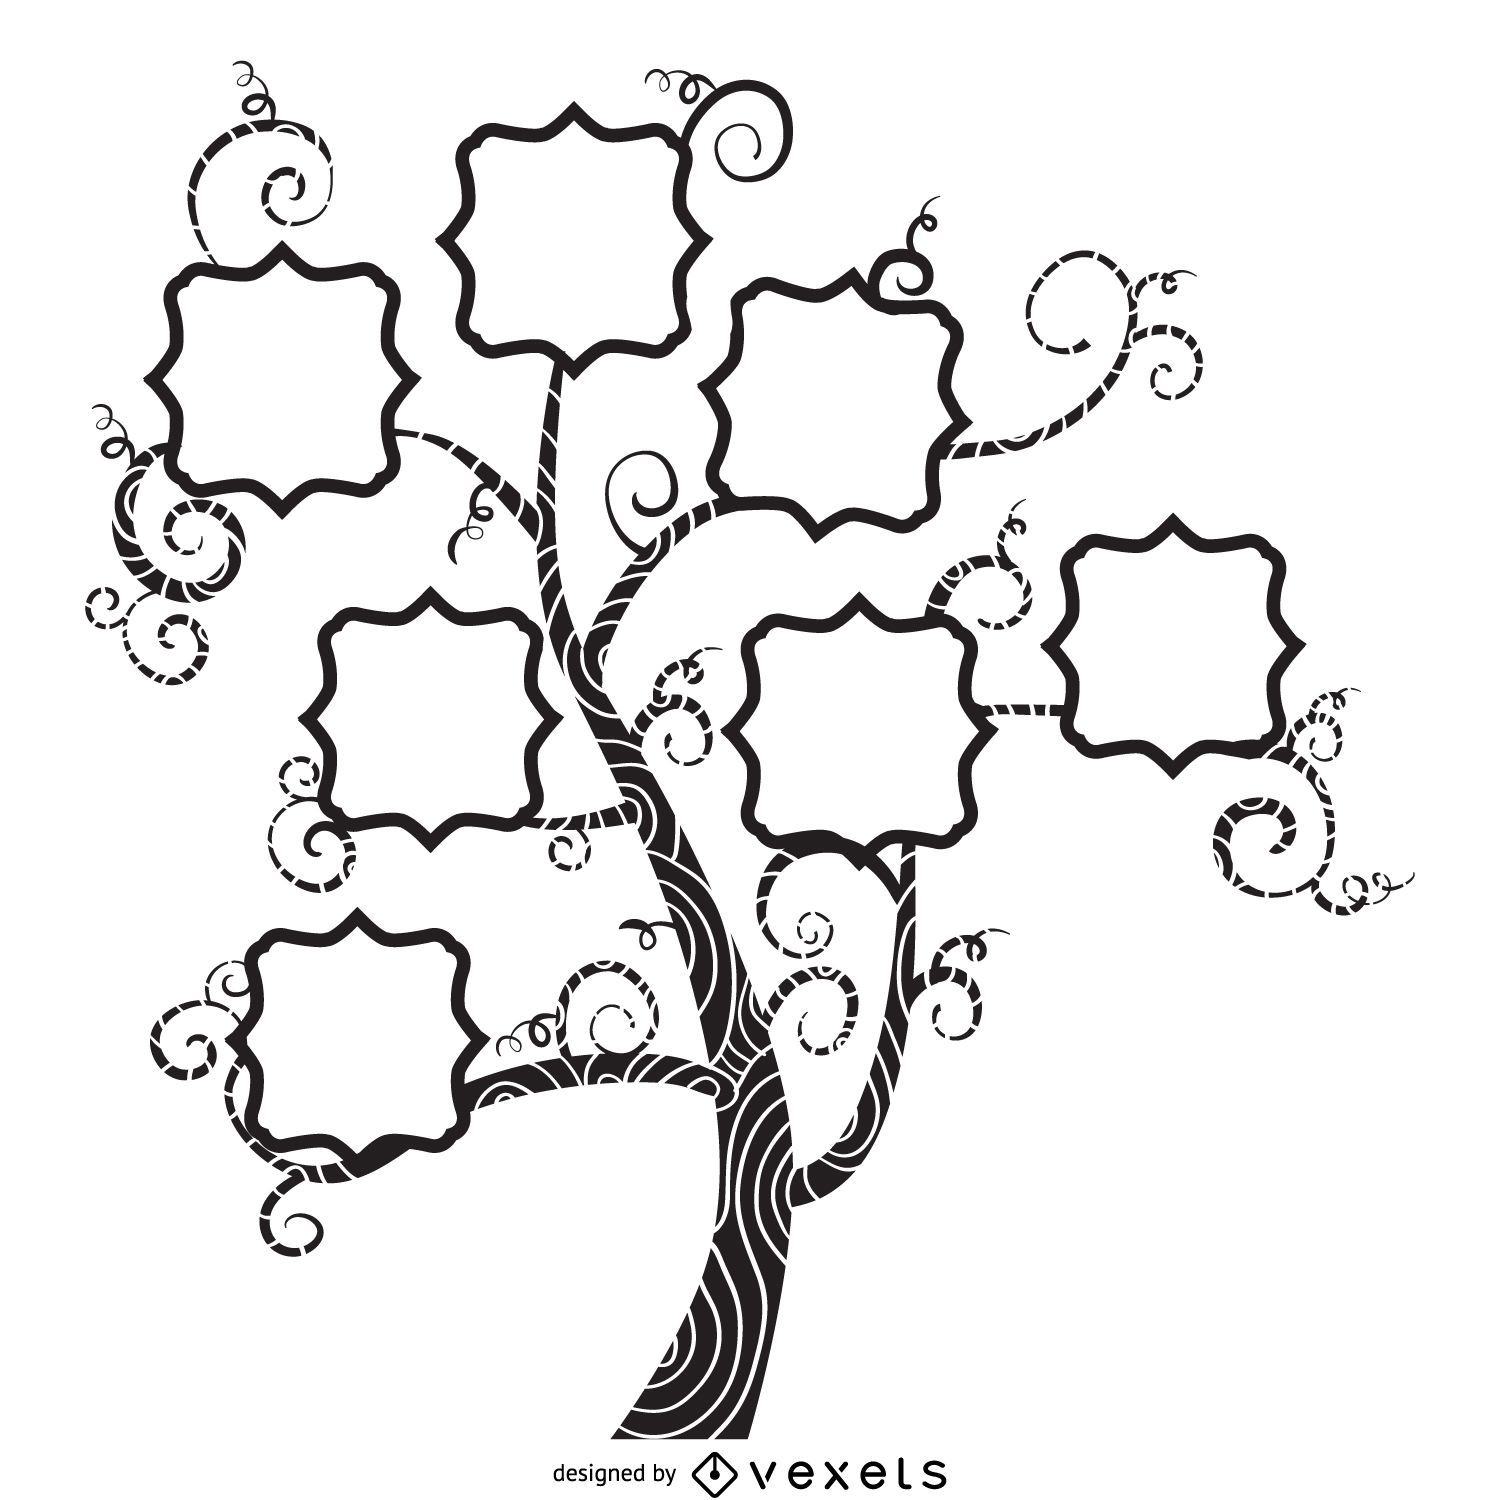 Árbol genealógico con diseño de remolinos.